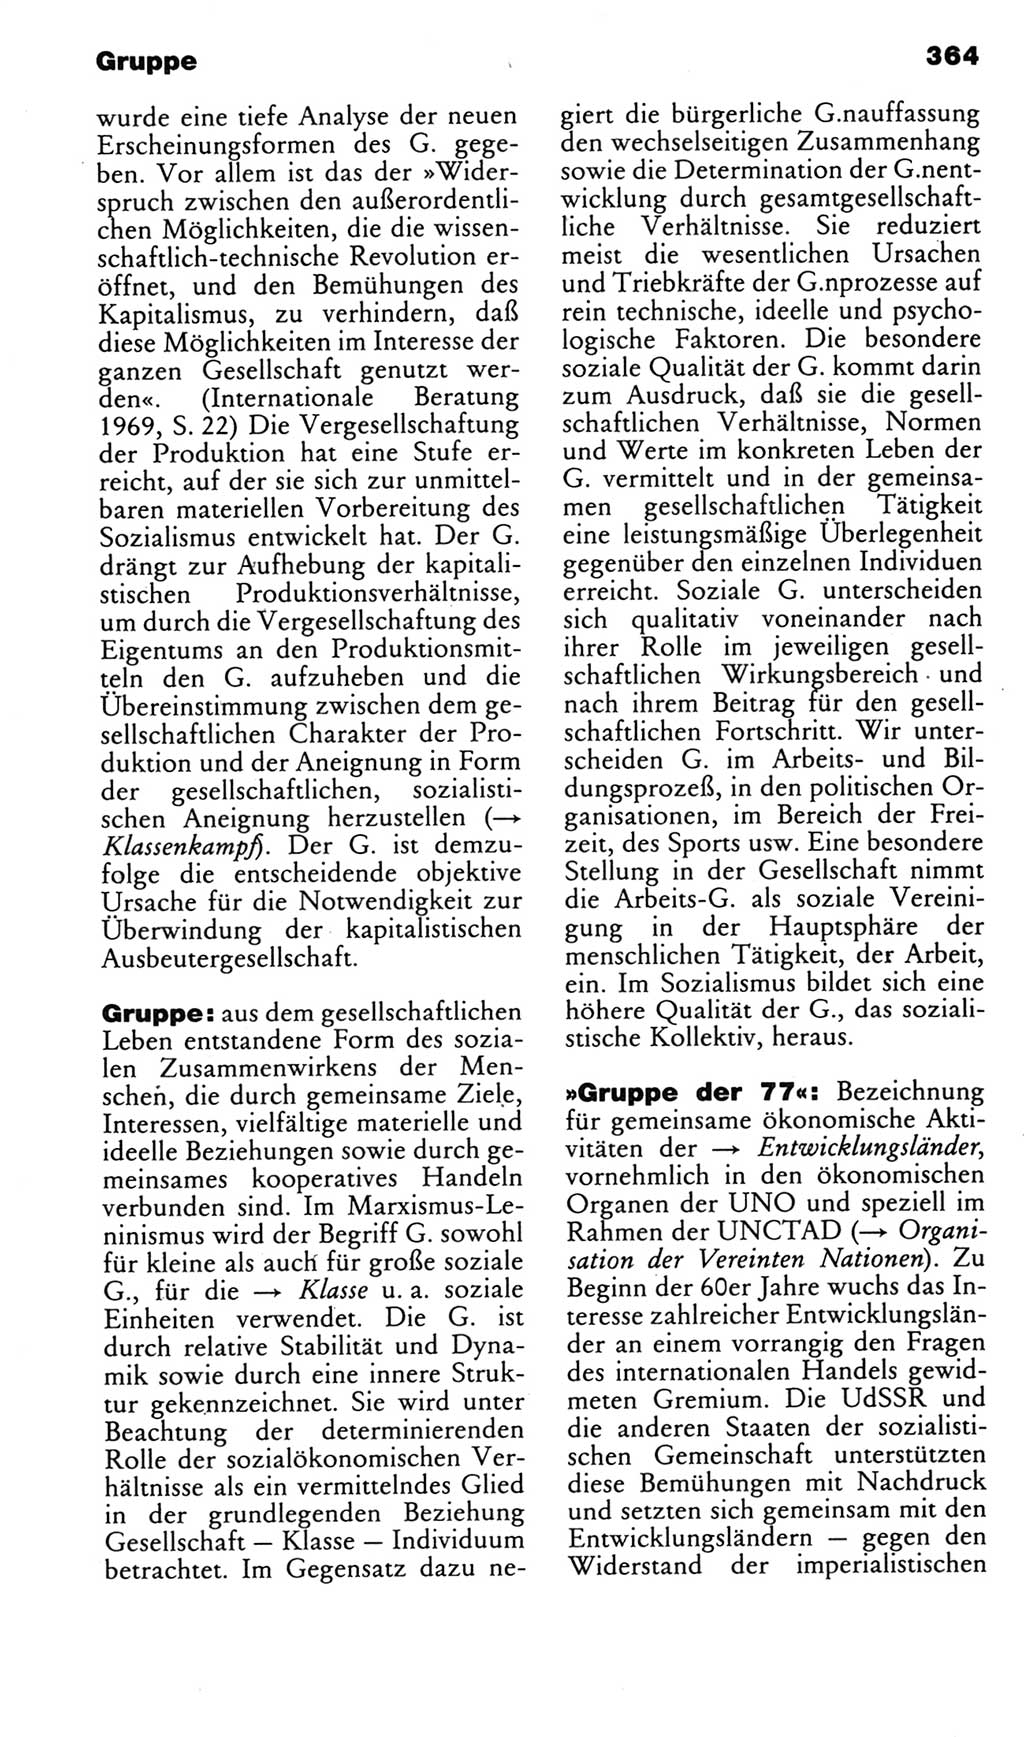 Kleines politisches Wörterbuch [Deutsche Demokratische Republik (DDR)] 1985, Seite 364 (Kl. pol. Wb. DDR 1985, S. 364)